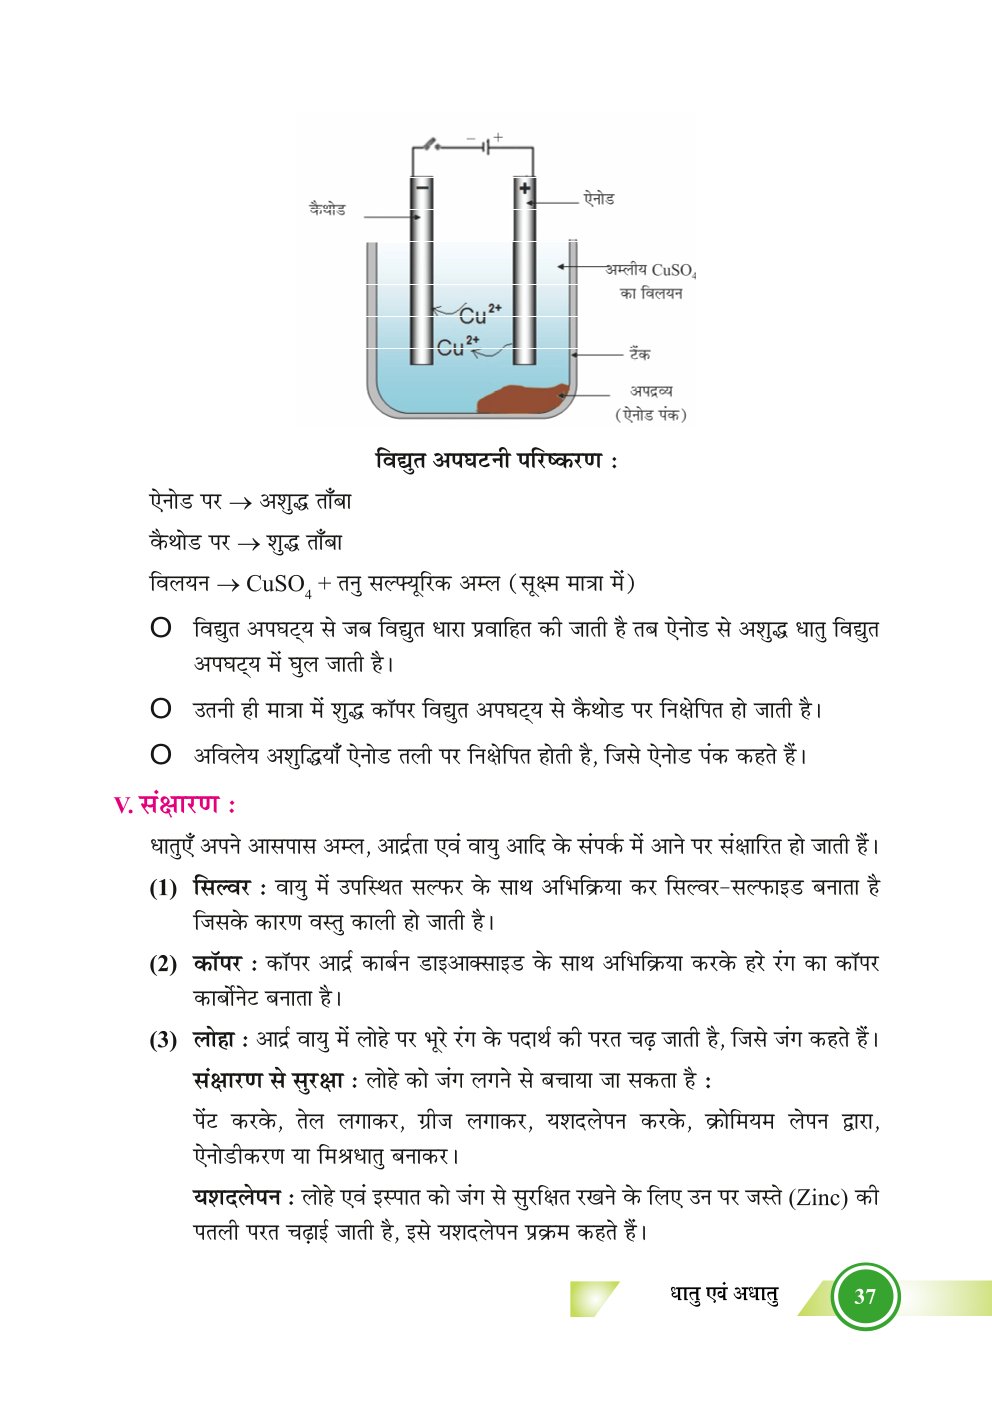 Bihar Board Class 10th Chemistry Notes | Metals and Non-Metals | Class 10 Chemistry Chapter 3 Rivision Notes PDF | धातु एवं अधातु | बिहार बोर्ड क्लास 10वीं रसायनशास्त्र नोट्स | कक्षा 10 रसायन विज्ञान हिंदी में नोट्स